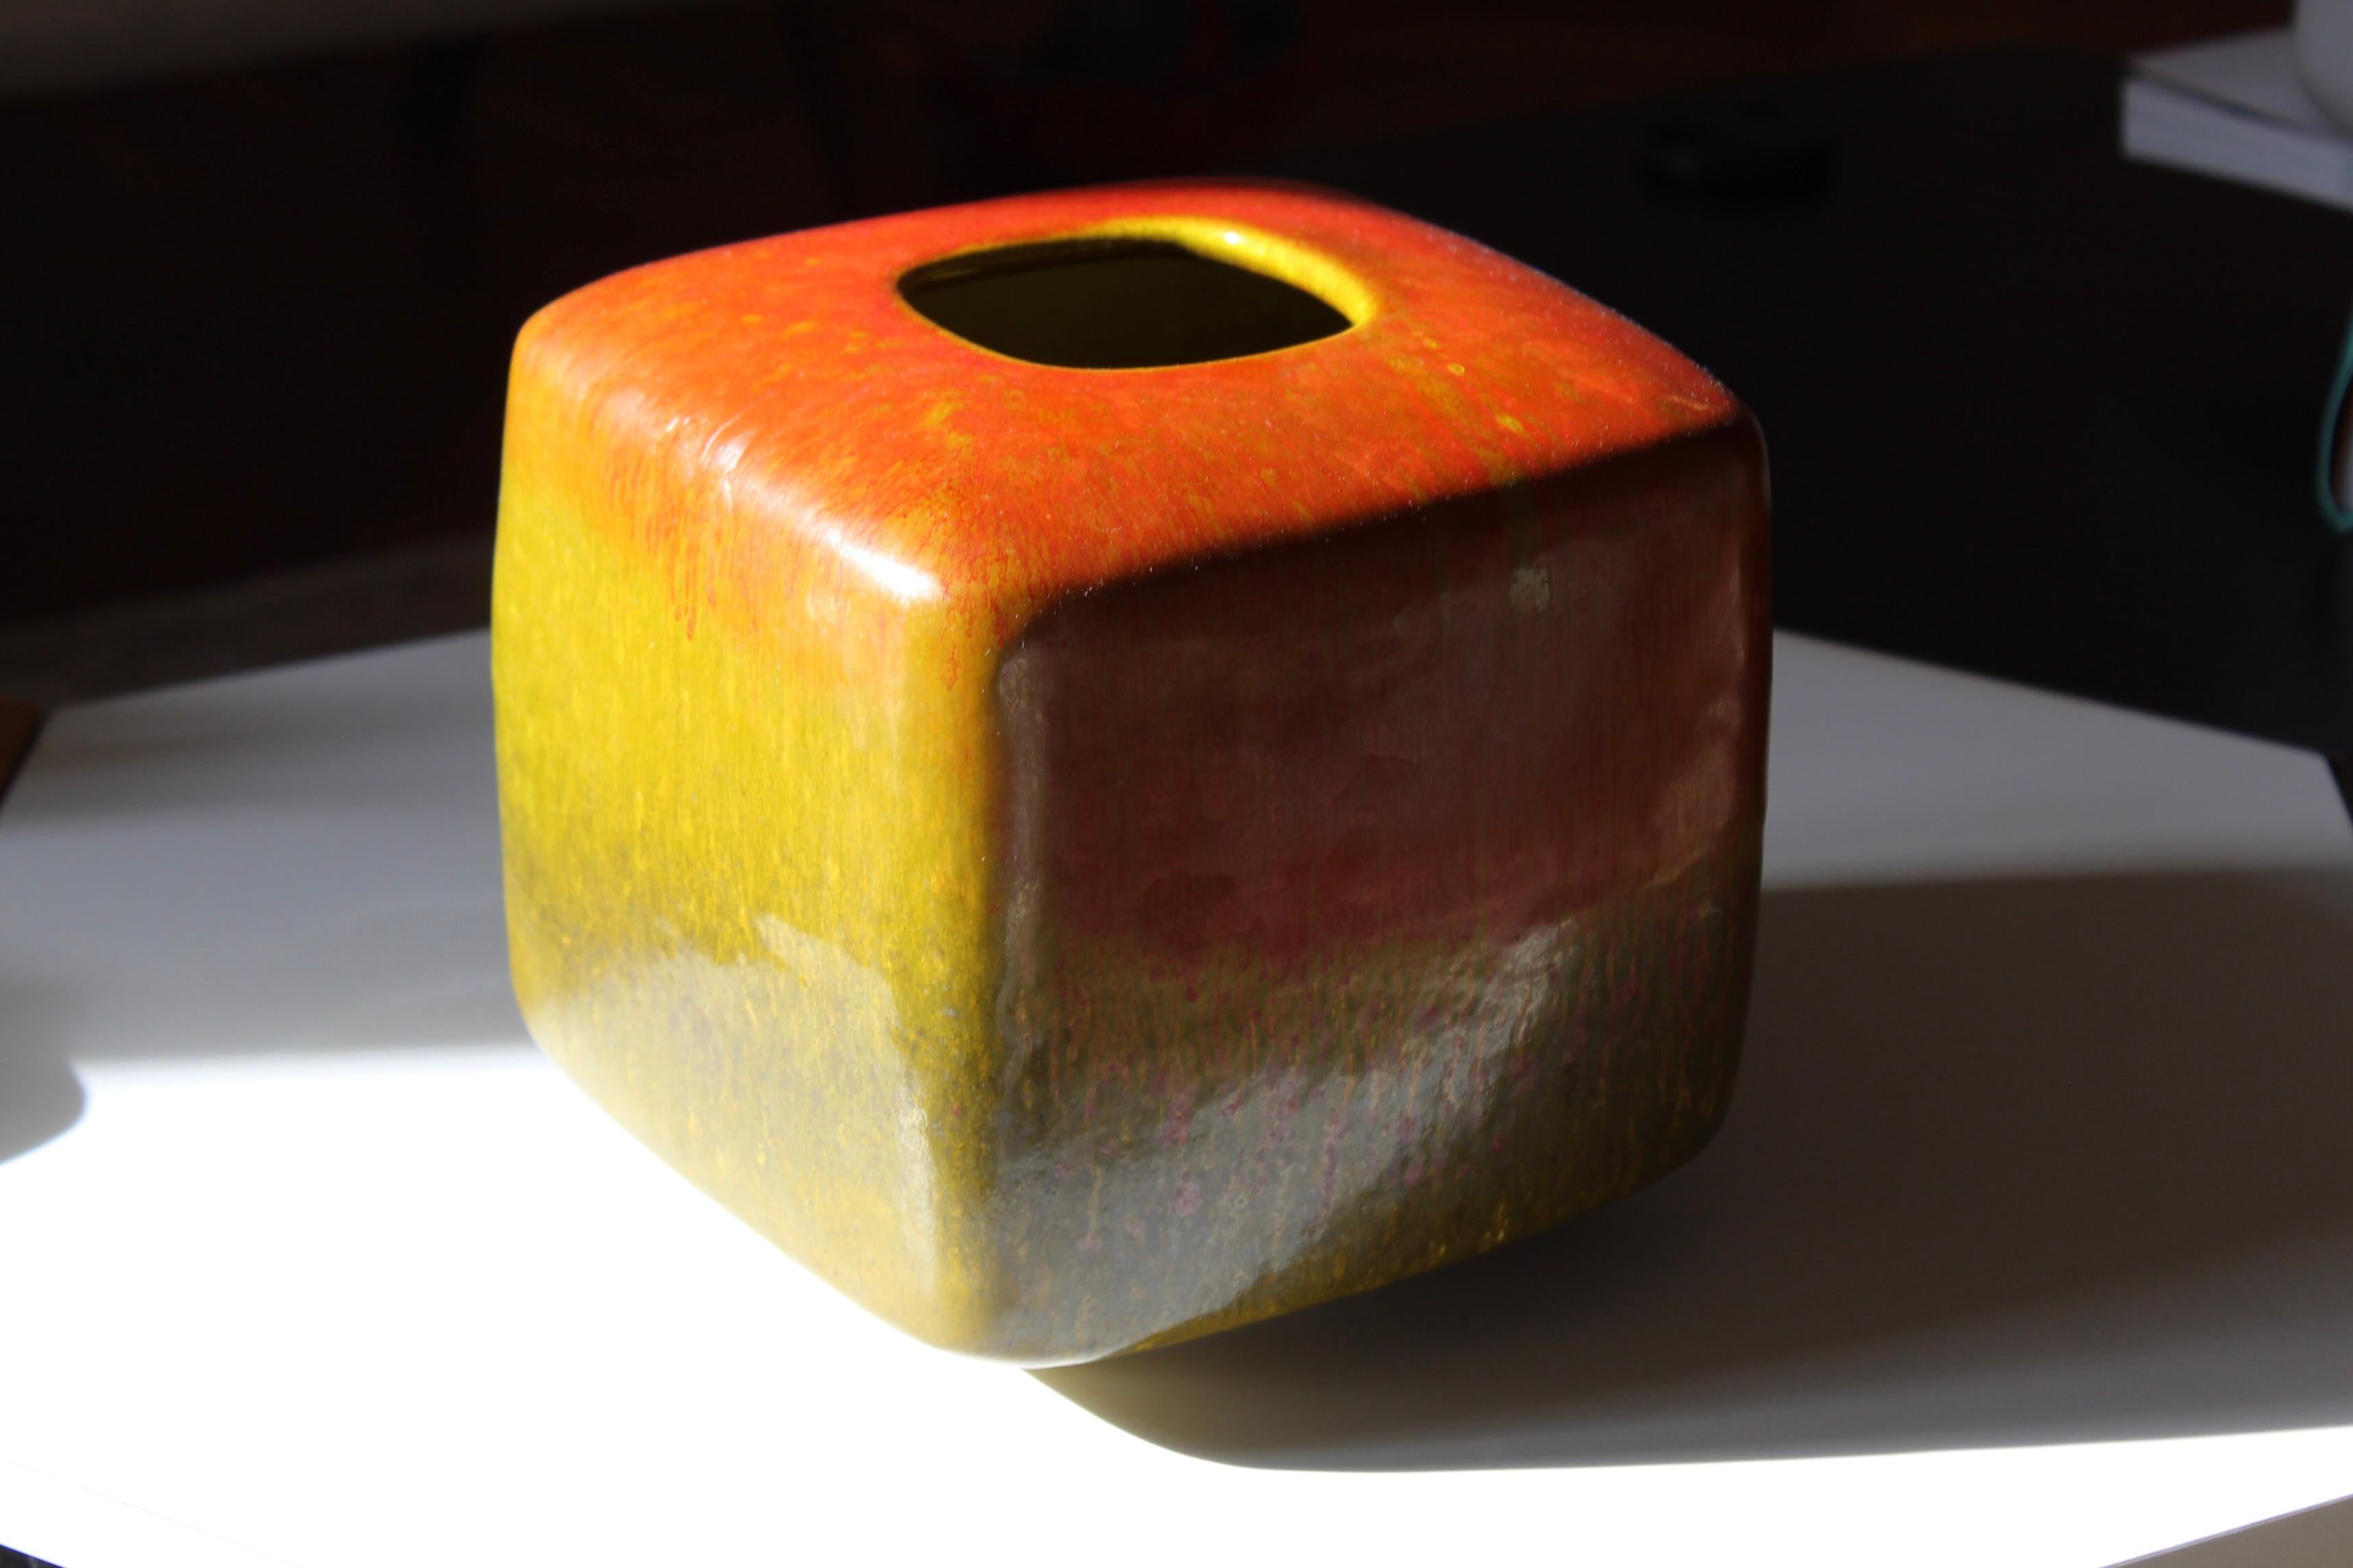 Einzigartige Vase aus rot und gelb glasierter Keramik, entworfen und ausgeführt von Alessio Tasca. Die Vase wird im Studio des Künstlers hergestellt und ist mit einer kunstvollen Glasur versehen.